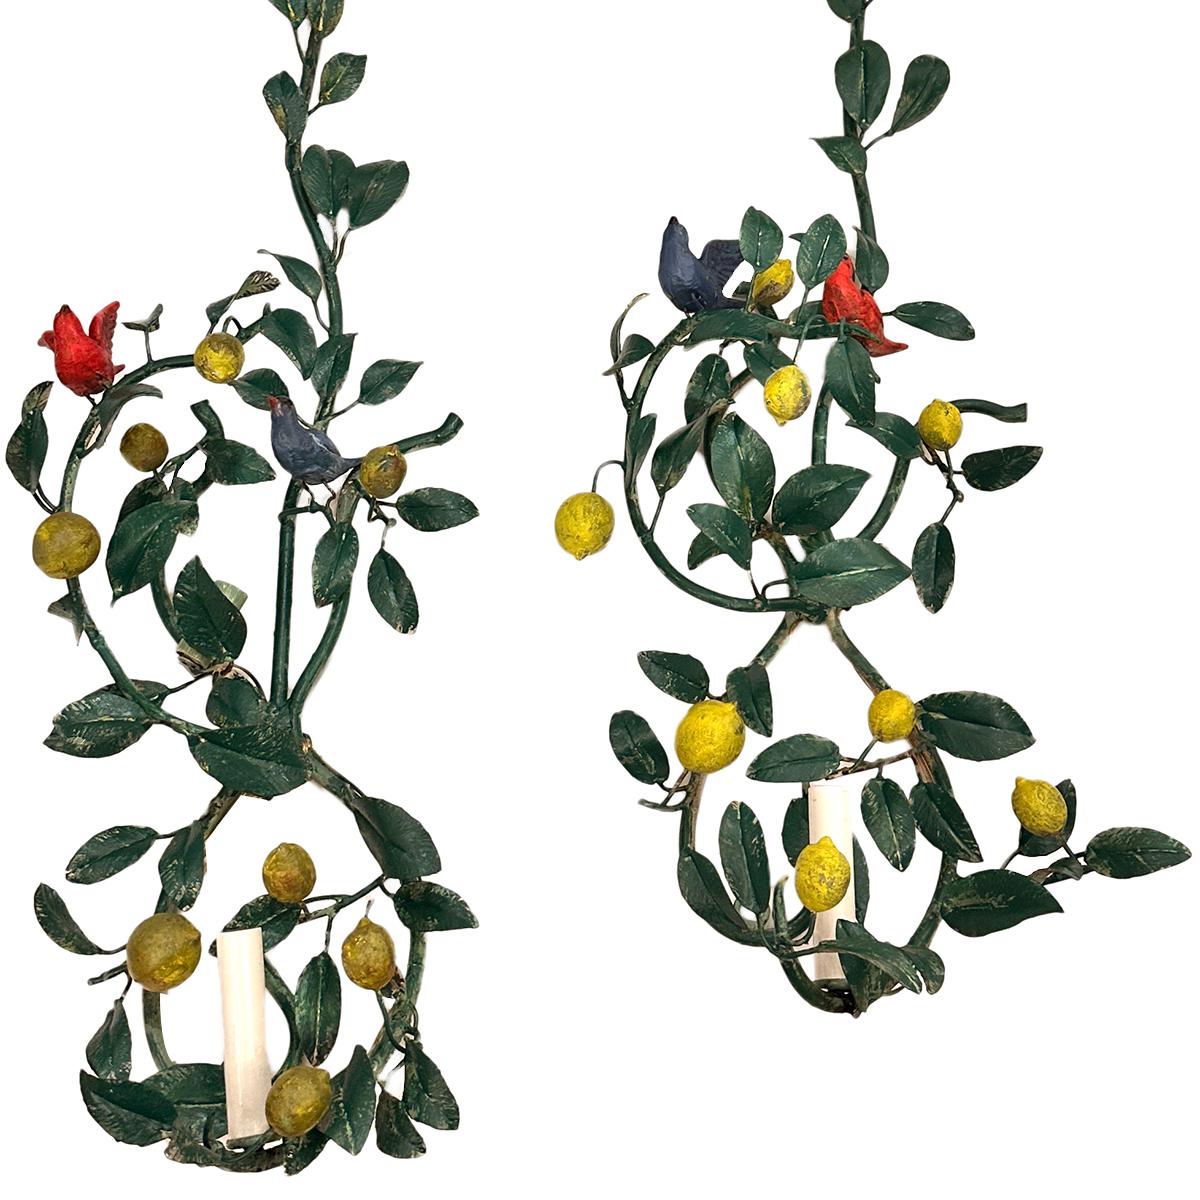 Zwei italienische Wandleuchter aus den 1940er Jahren mit gemalten Blättern und Vögeln.

Abmessungen:
Höhe: 50